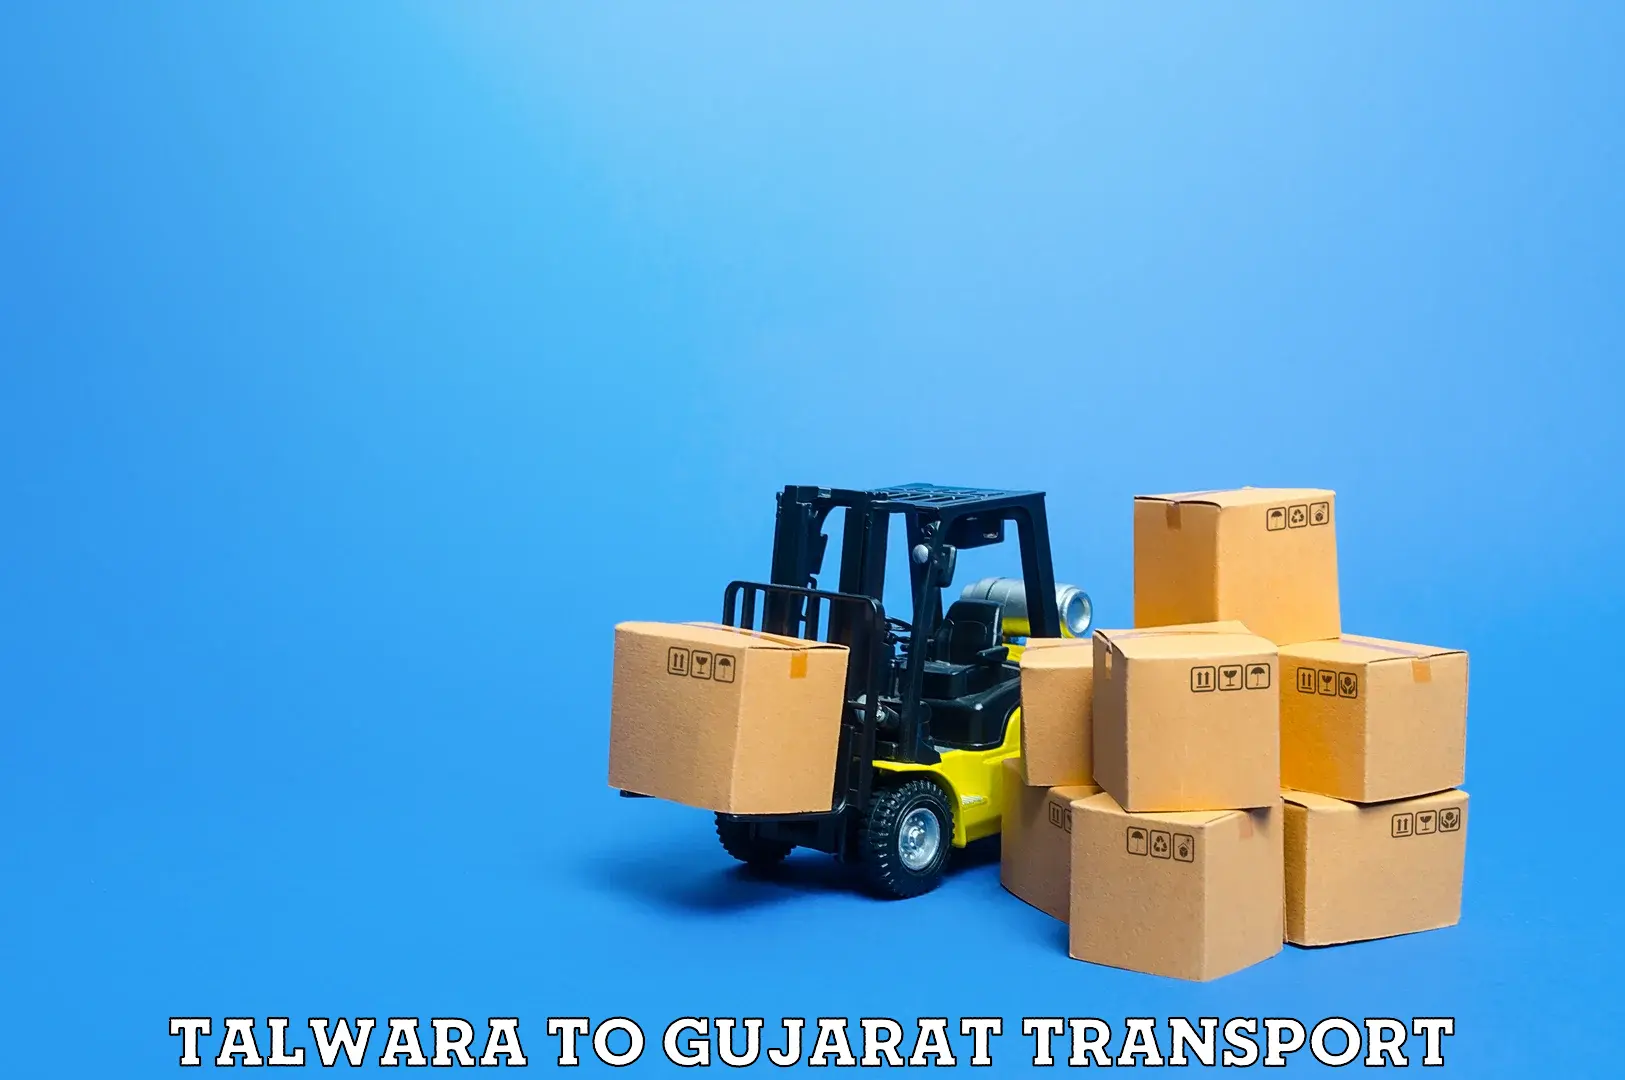 Furniture transport service Talwara to Godhra